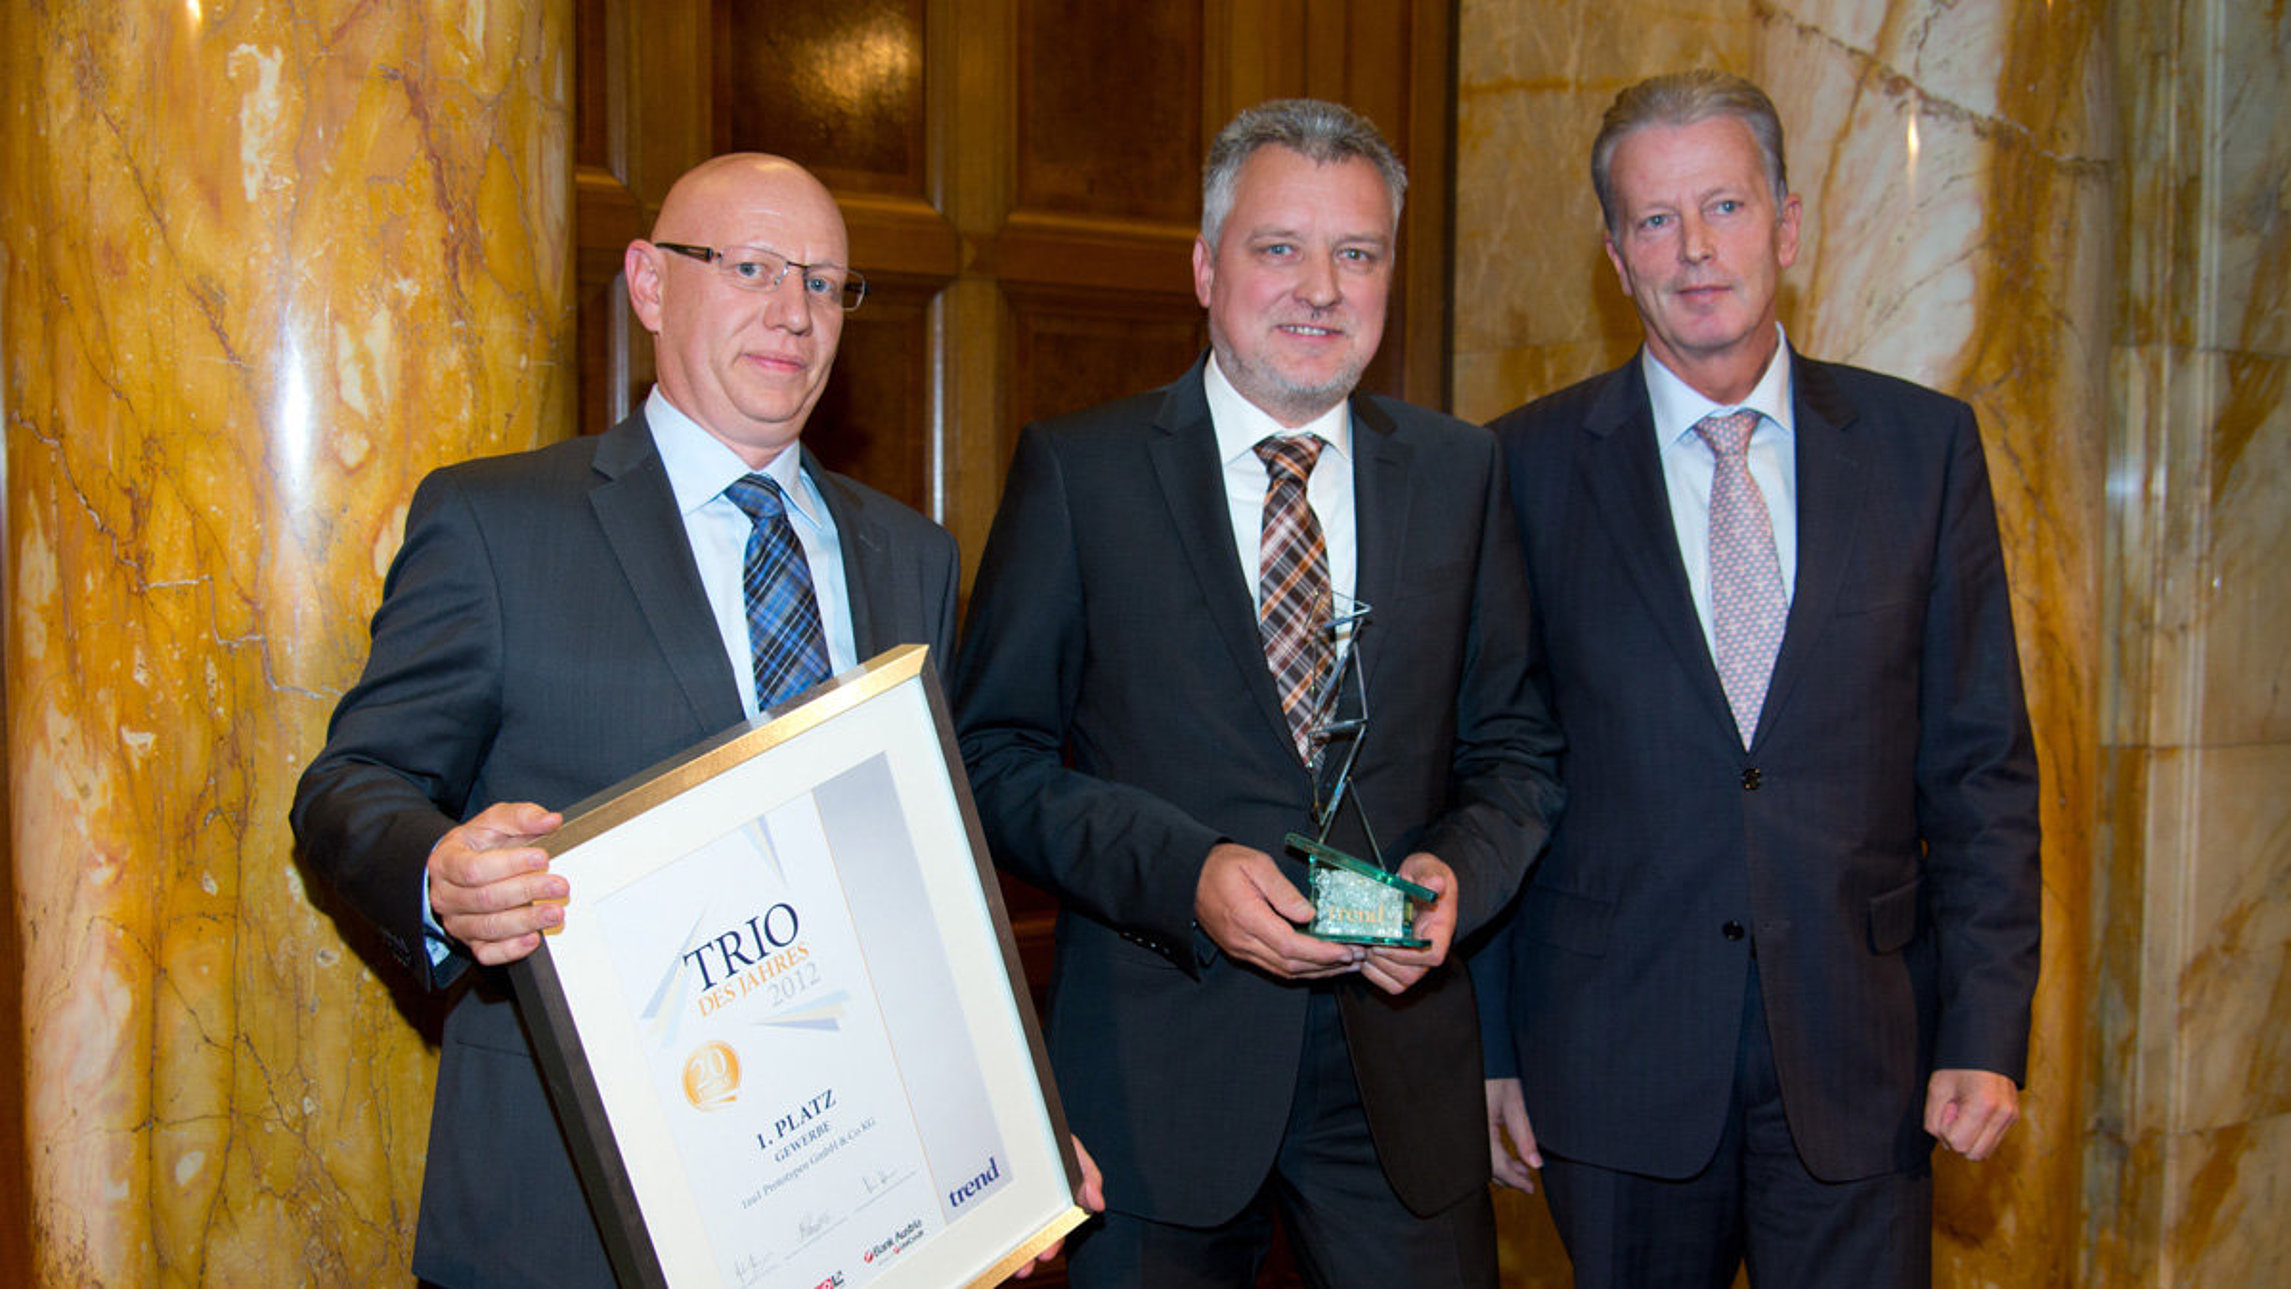 1zu1 erhält die Auszeichnung Trio des Jahres 2012